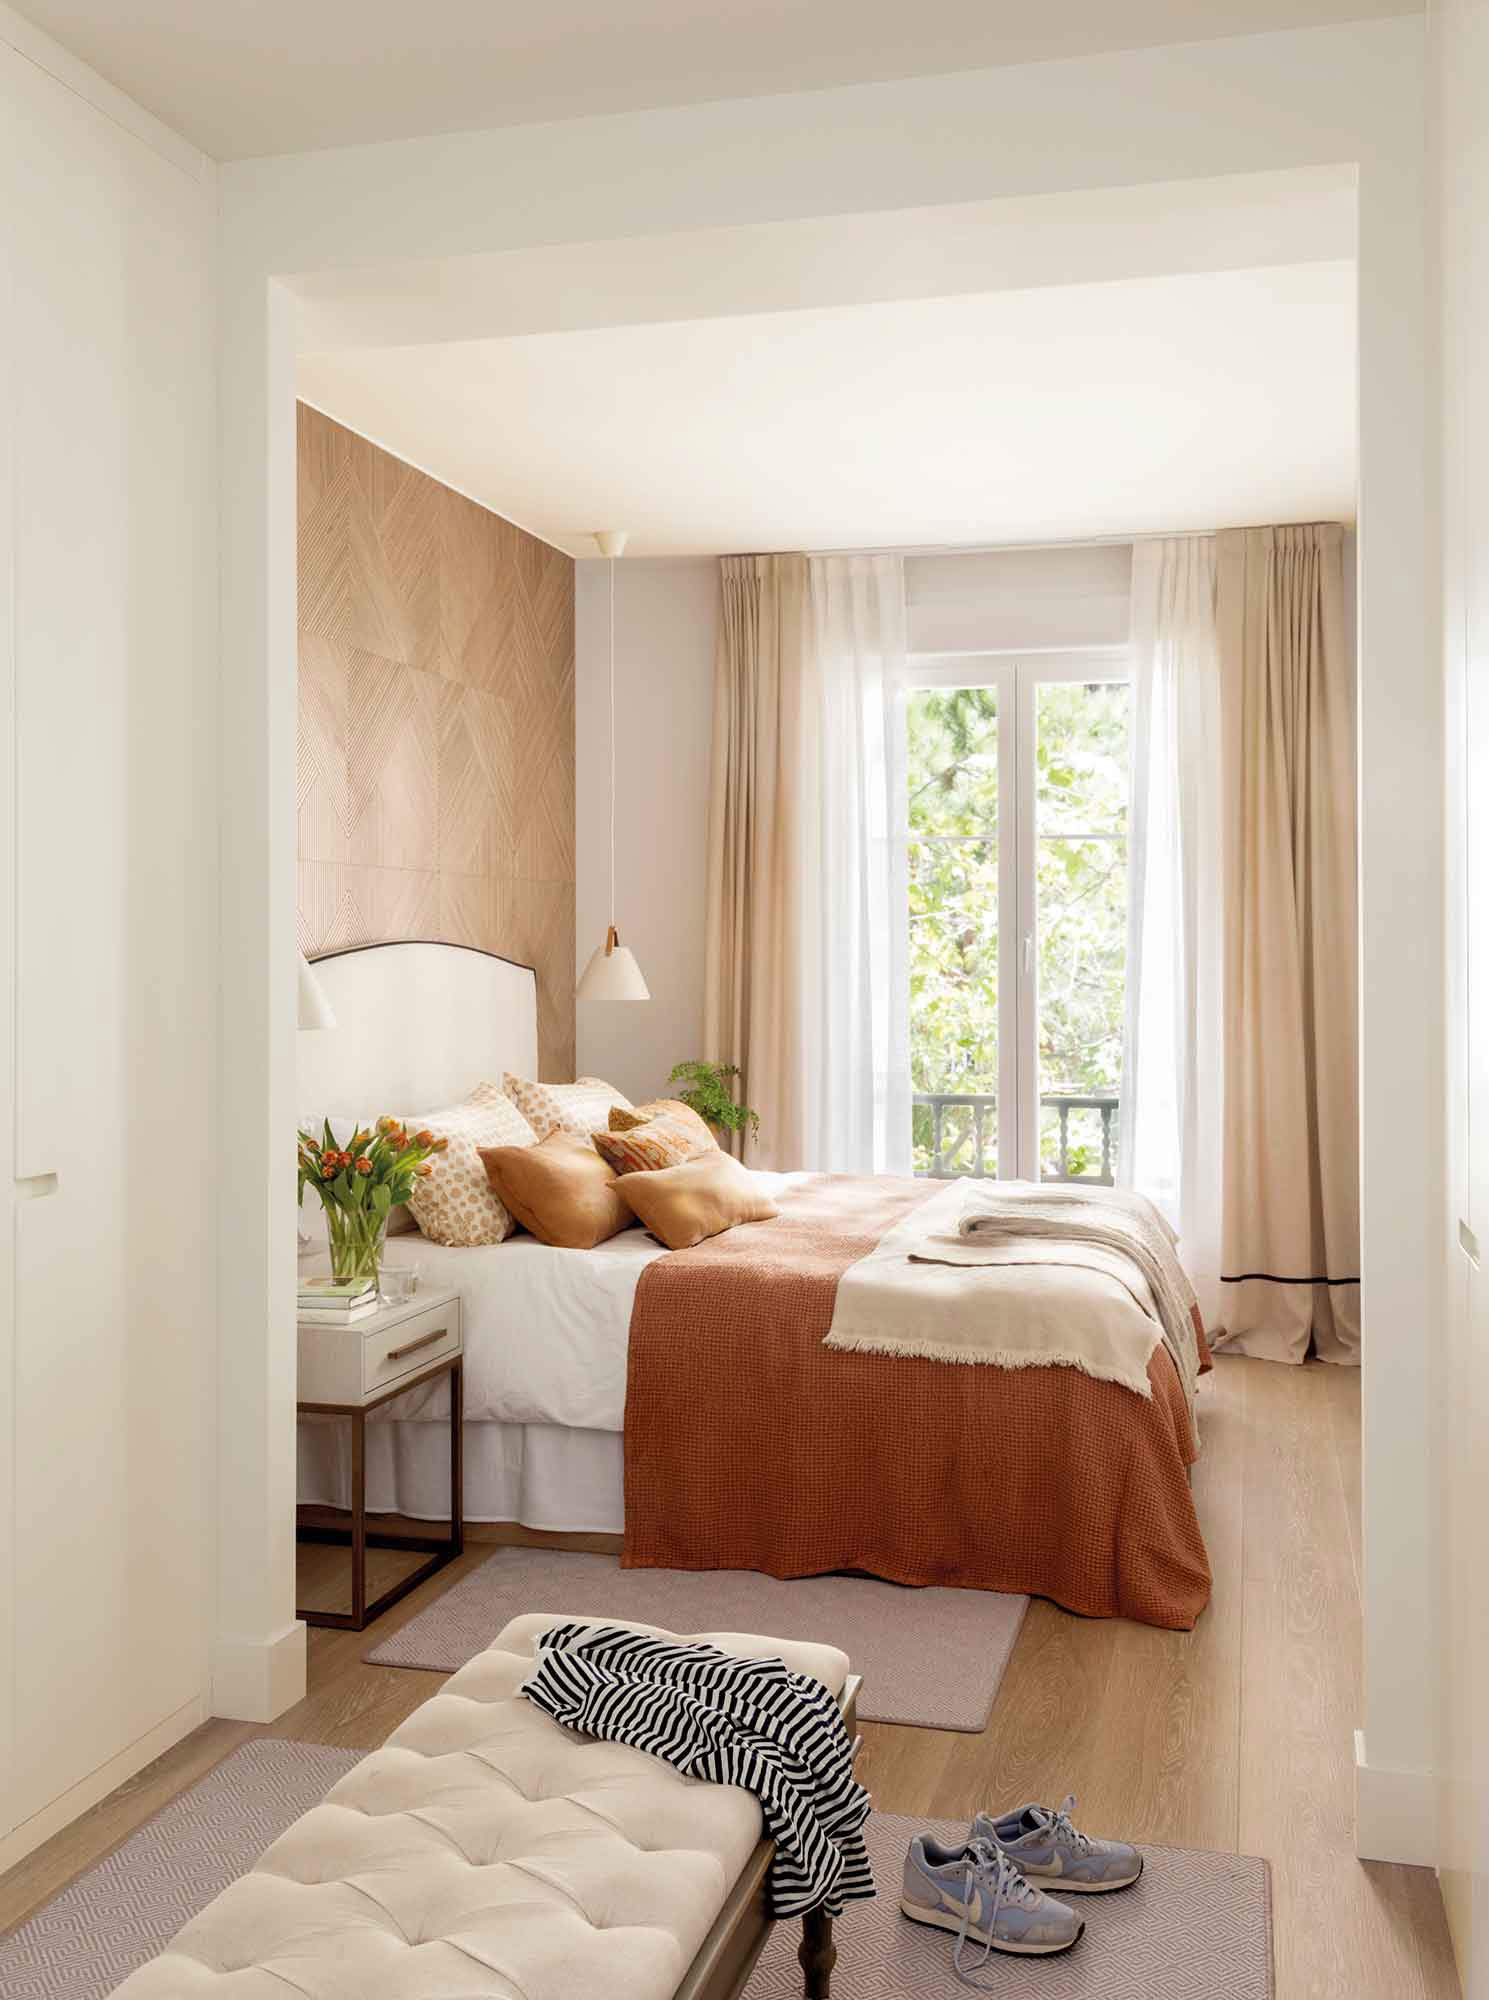 Dormitorio con vestidor y revestimiento de madera en el cabecero.